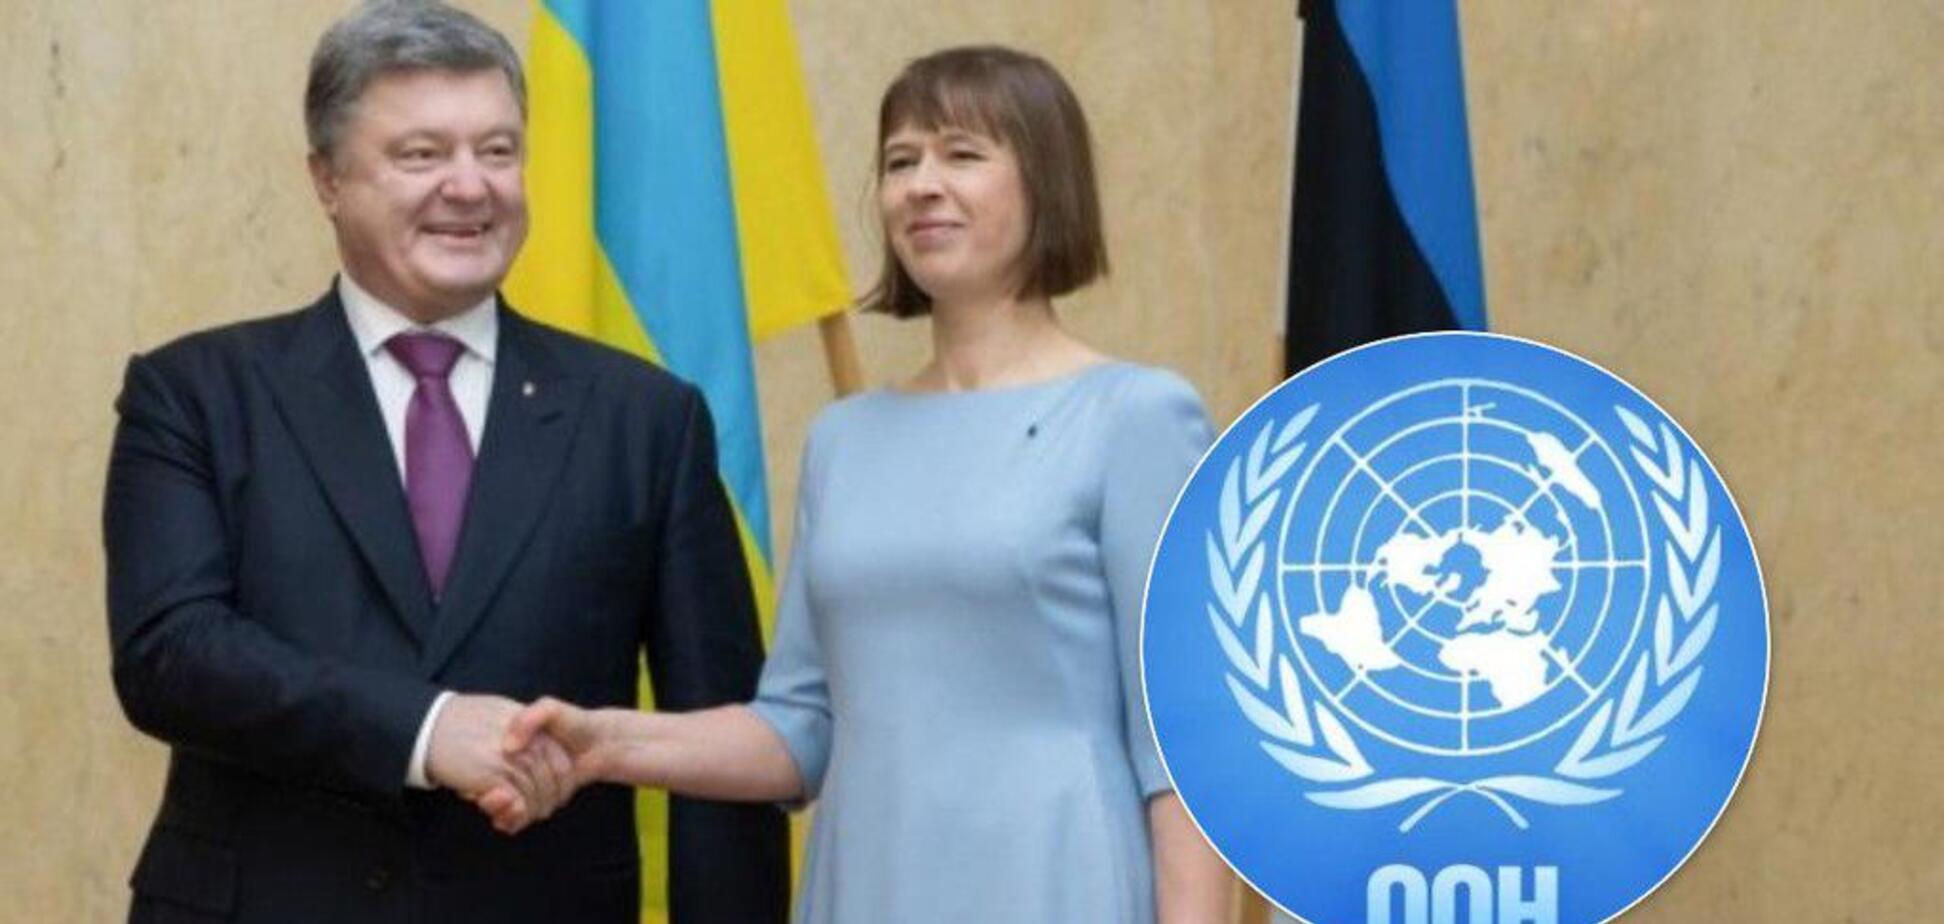 'Називайте речі своїми іменами — в Європі йде війна!' Президент Естонії потужно підтримала Україну в ООН